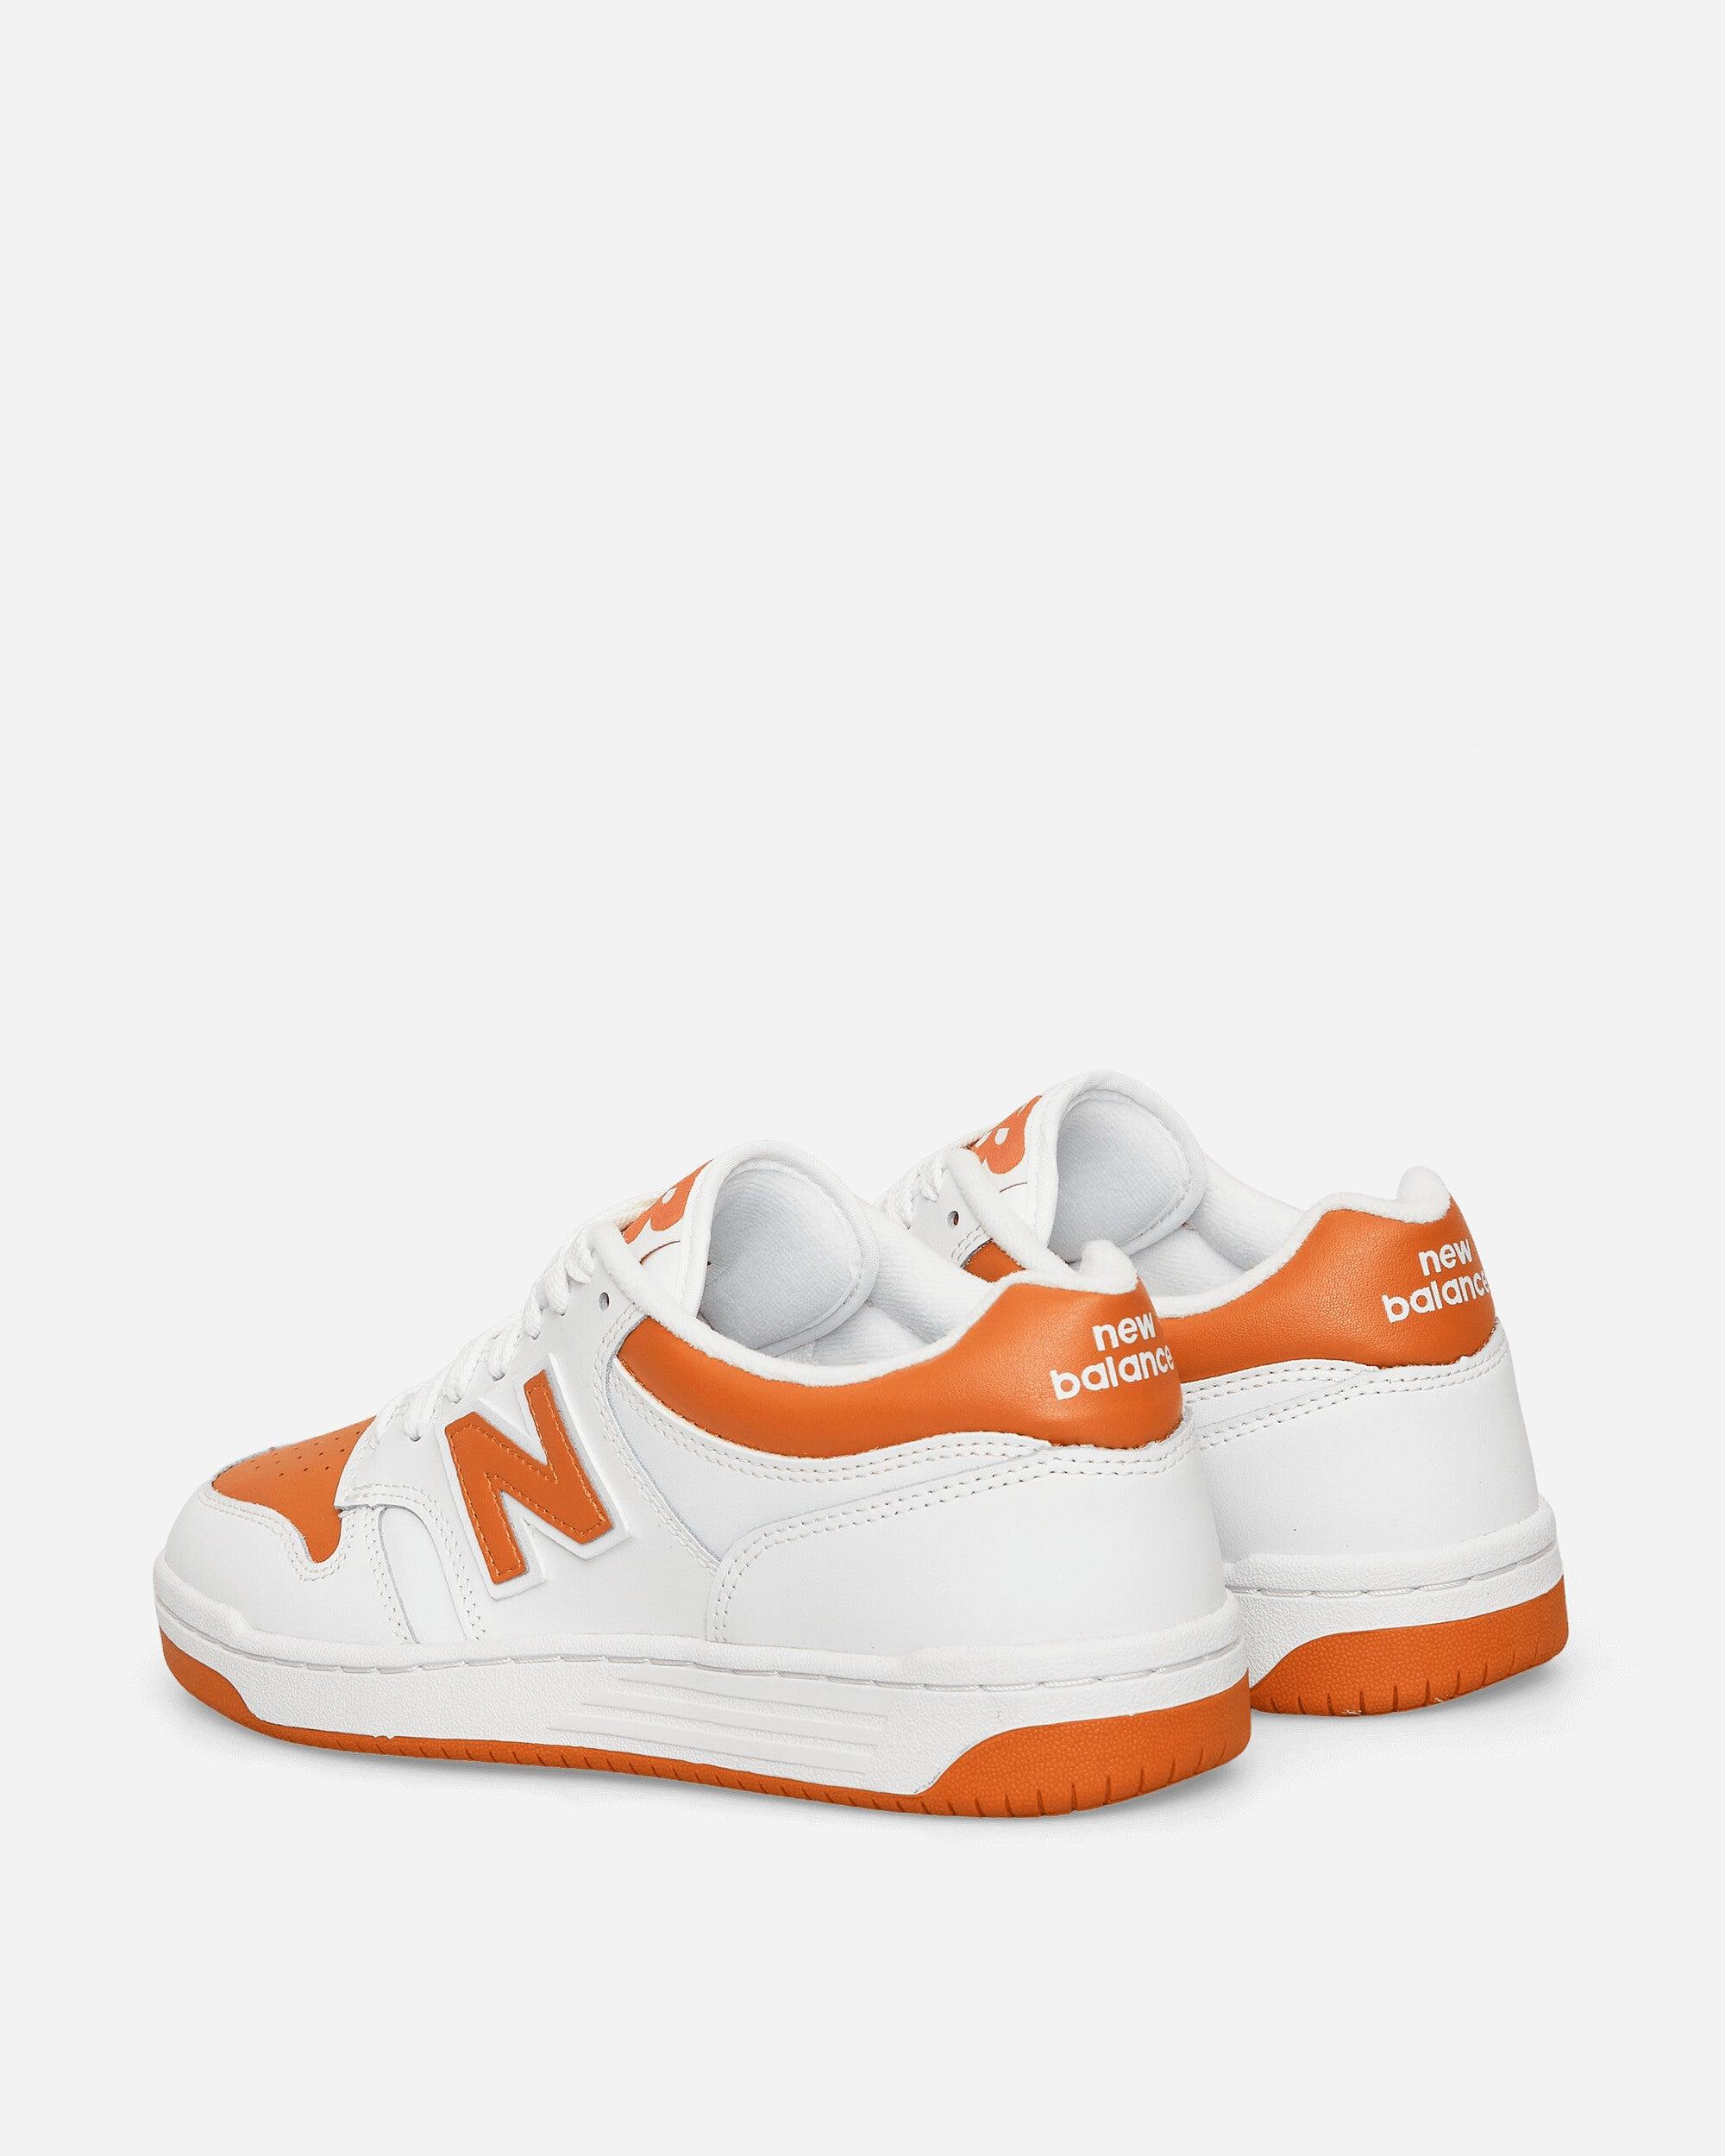 New Balance 480 Sneakers White / Orange for Men | Lyst